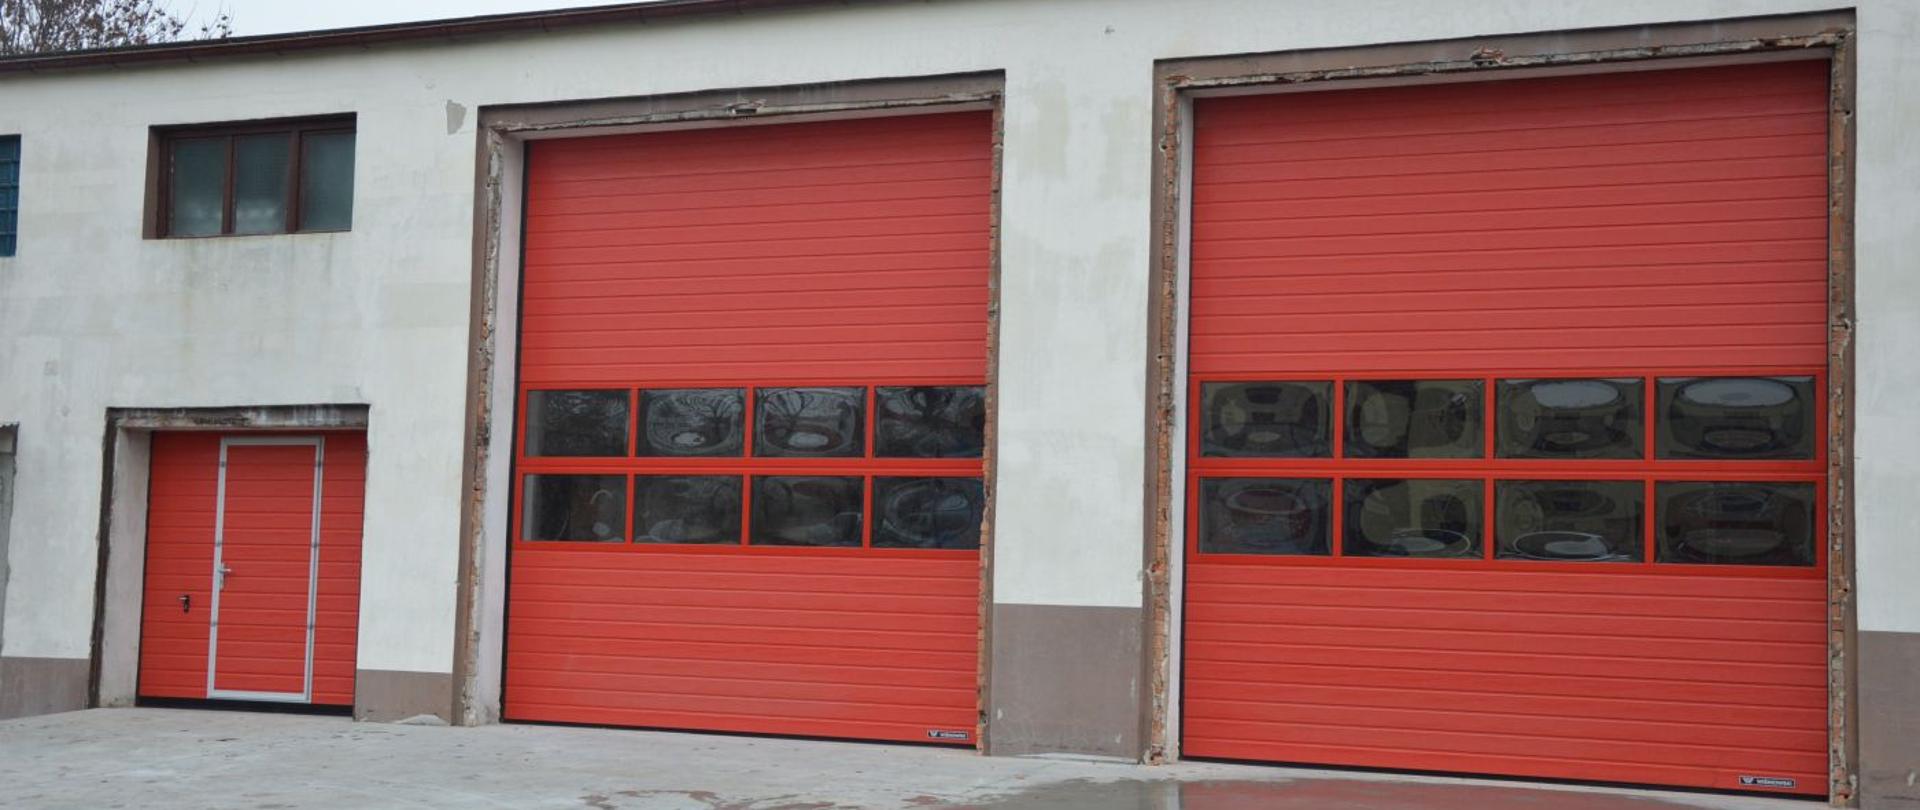 Budynek garażowo-warsztatowy, widok na nowe bramy podnoszone. Bramy koloru czerwonego, dwie z nich (większe) posiadają dwupoziomowe przeszklenie, trzecia - mniejsza (bez przeszklenia) wyposażona jest w drzwi.